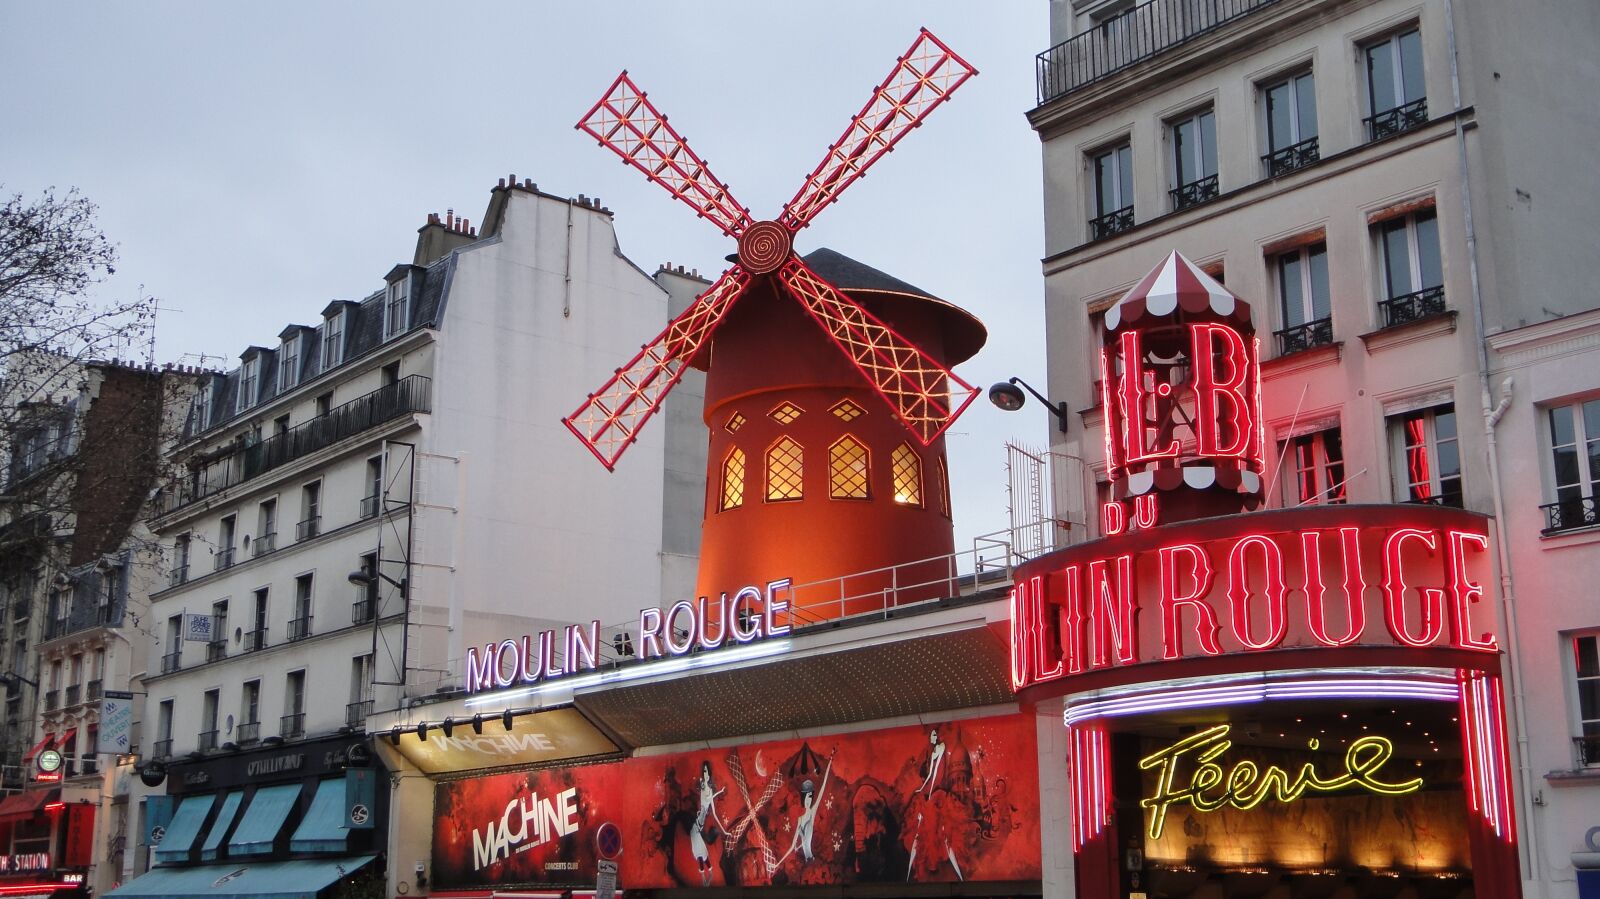 Sony DSC-TX9 sample photo. Moulin rouge, paris, architecture photography